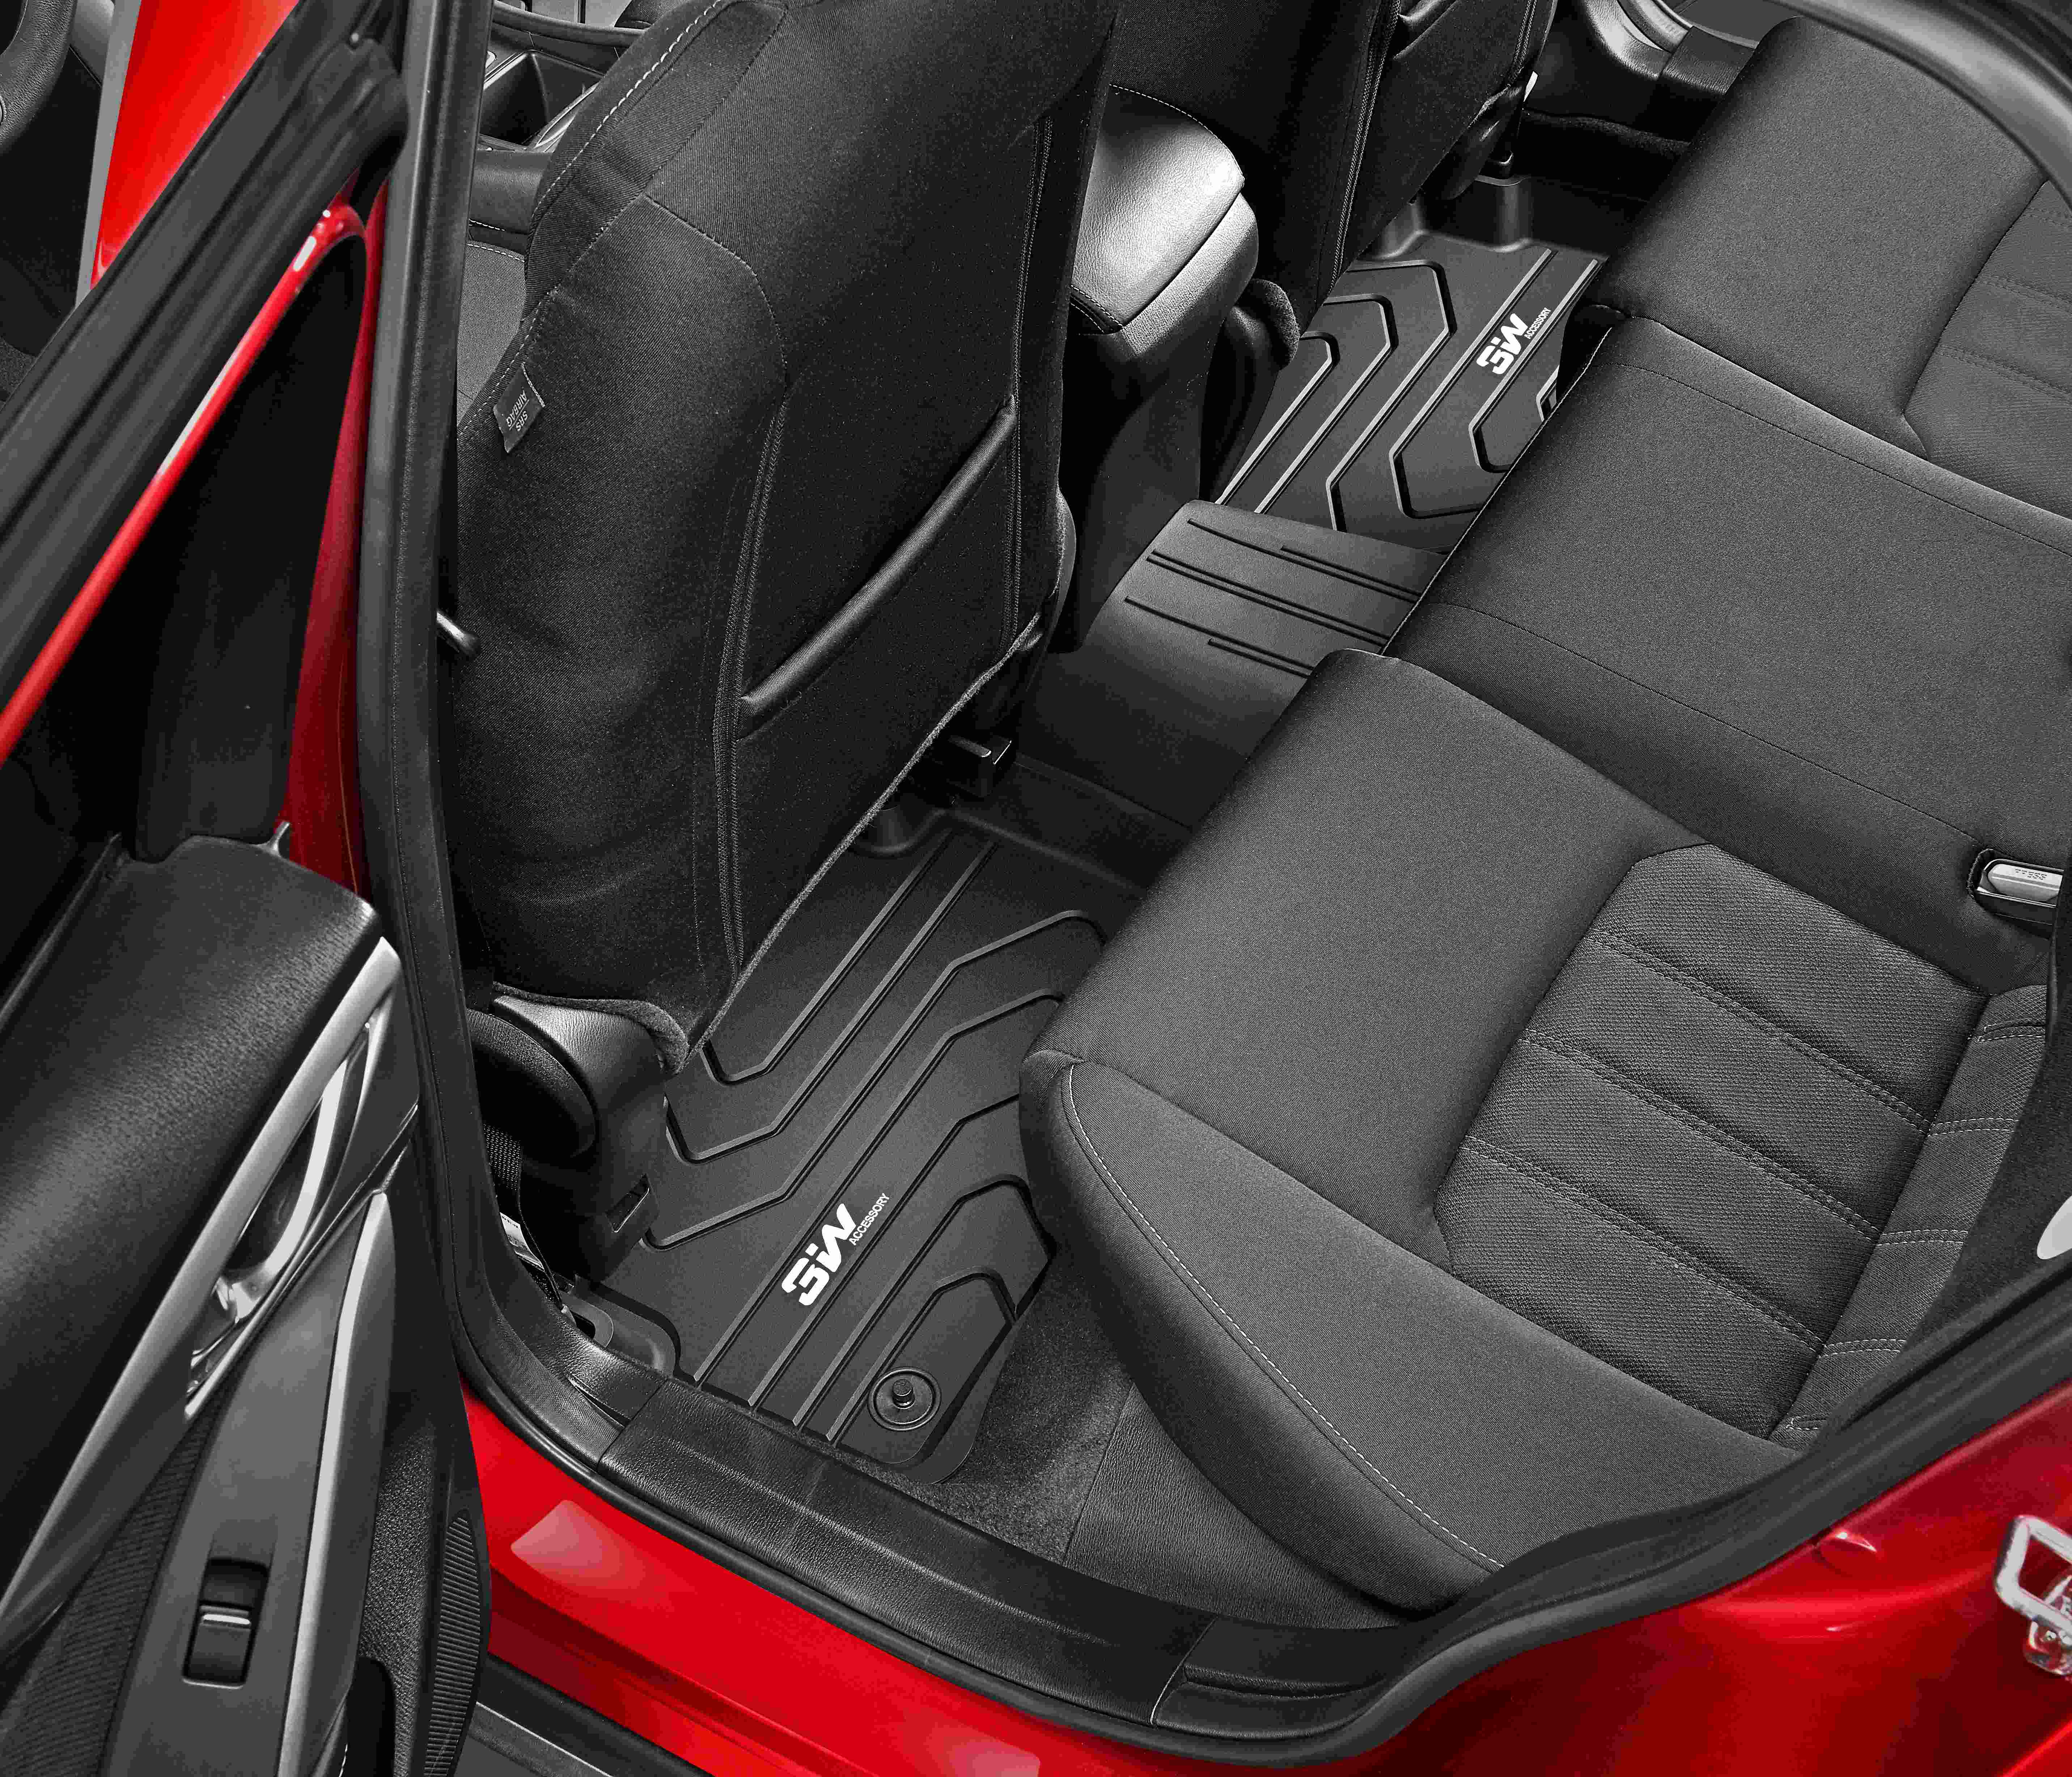 Thảm lót sàn xe ô tô dành cho MAZDA 3 2016 đến 2020 nhãn hiệu Macsim 3W - chất liệu nhựa TPE đúc khuôn cao cấp - màu đen